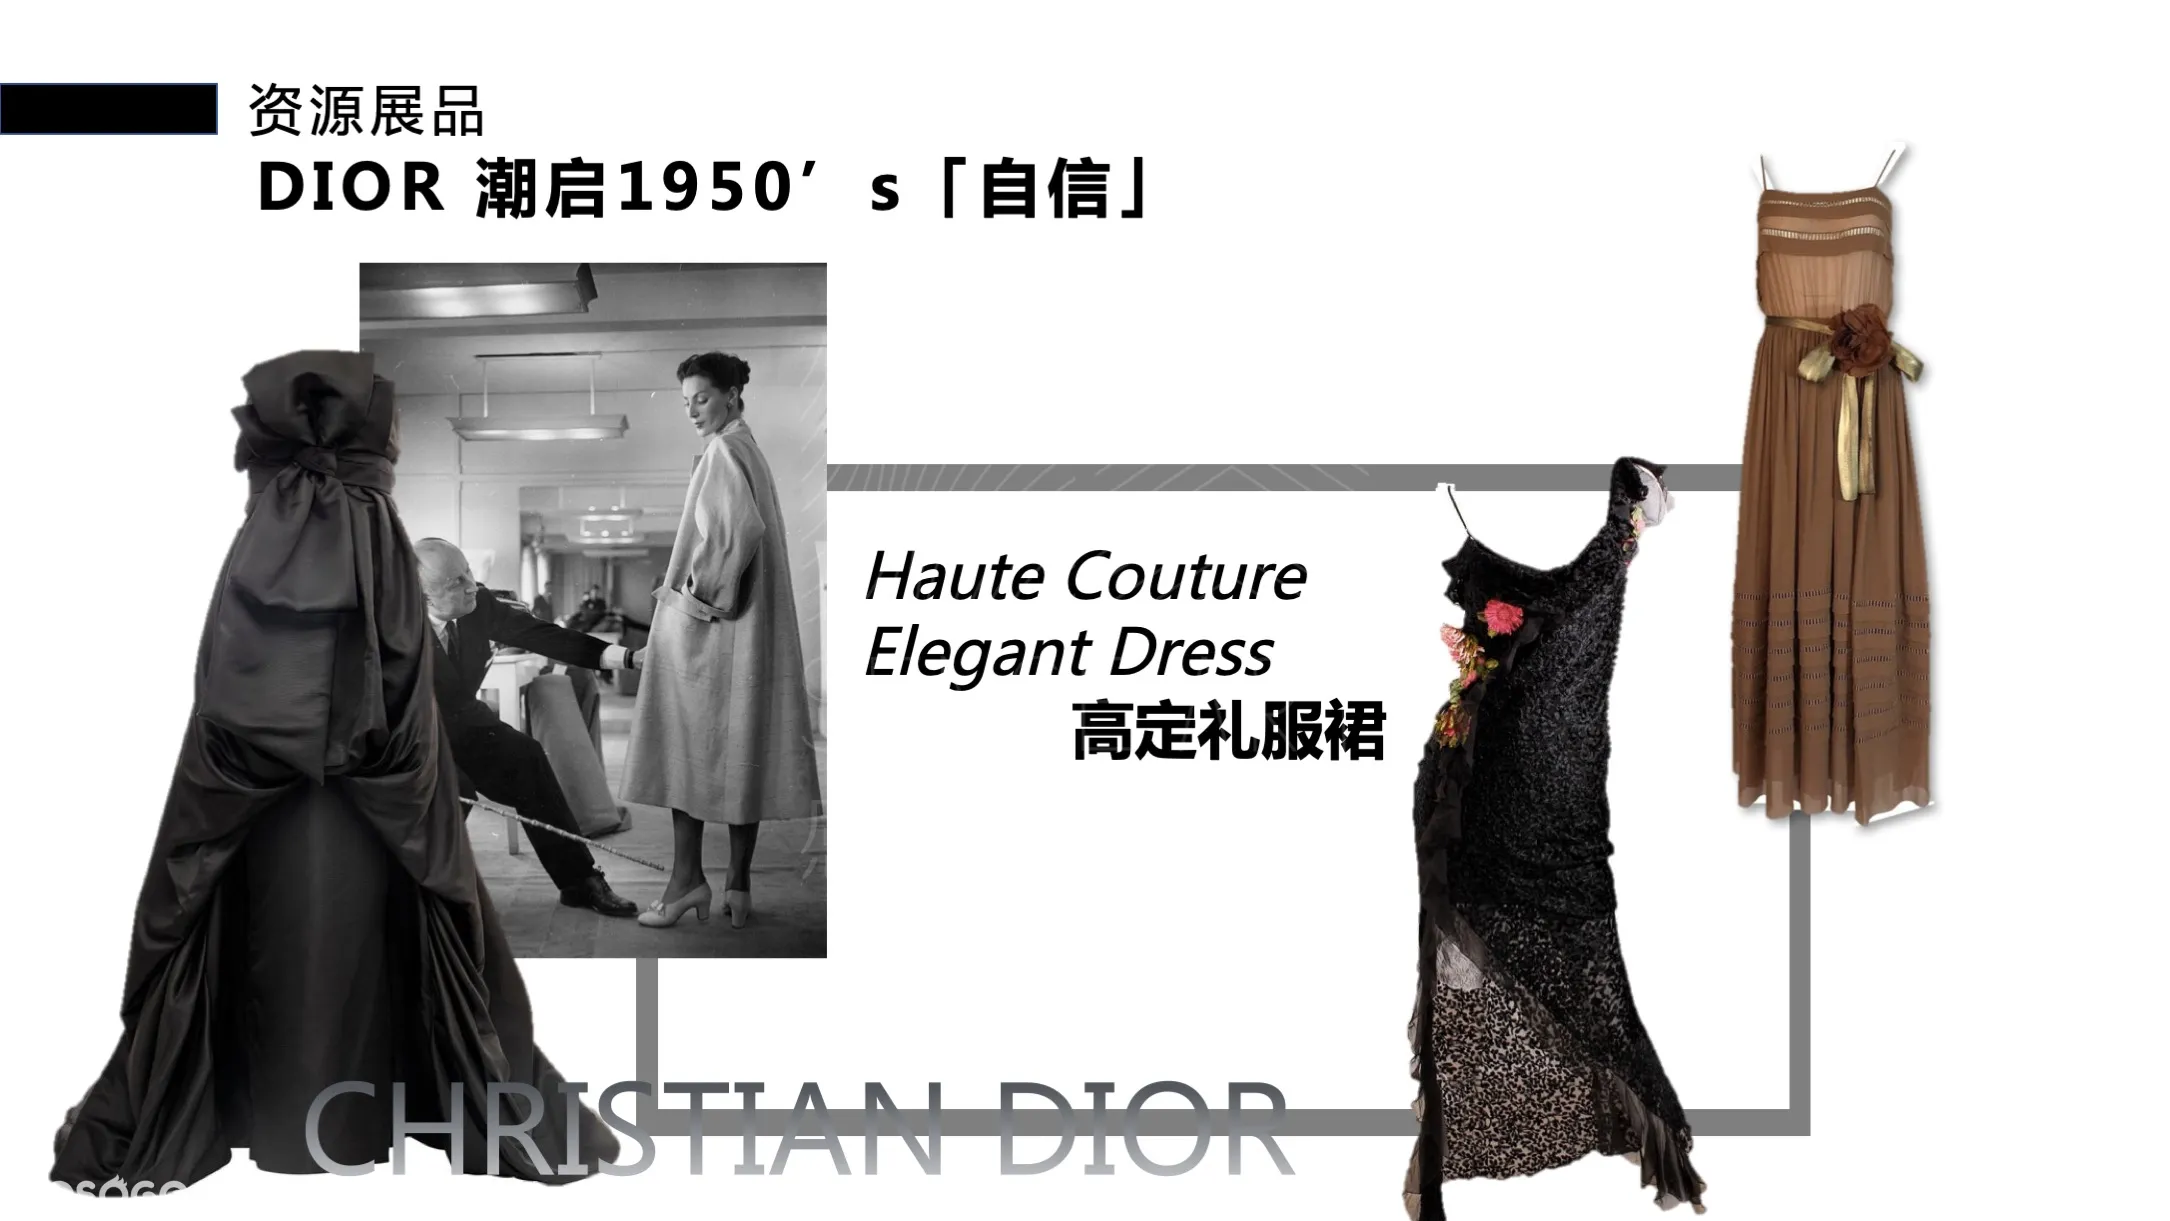 【潮启1950】三大名奢品牌时尚艺术收藏展 —感映艺术出品